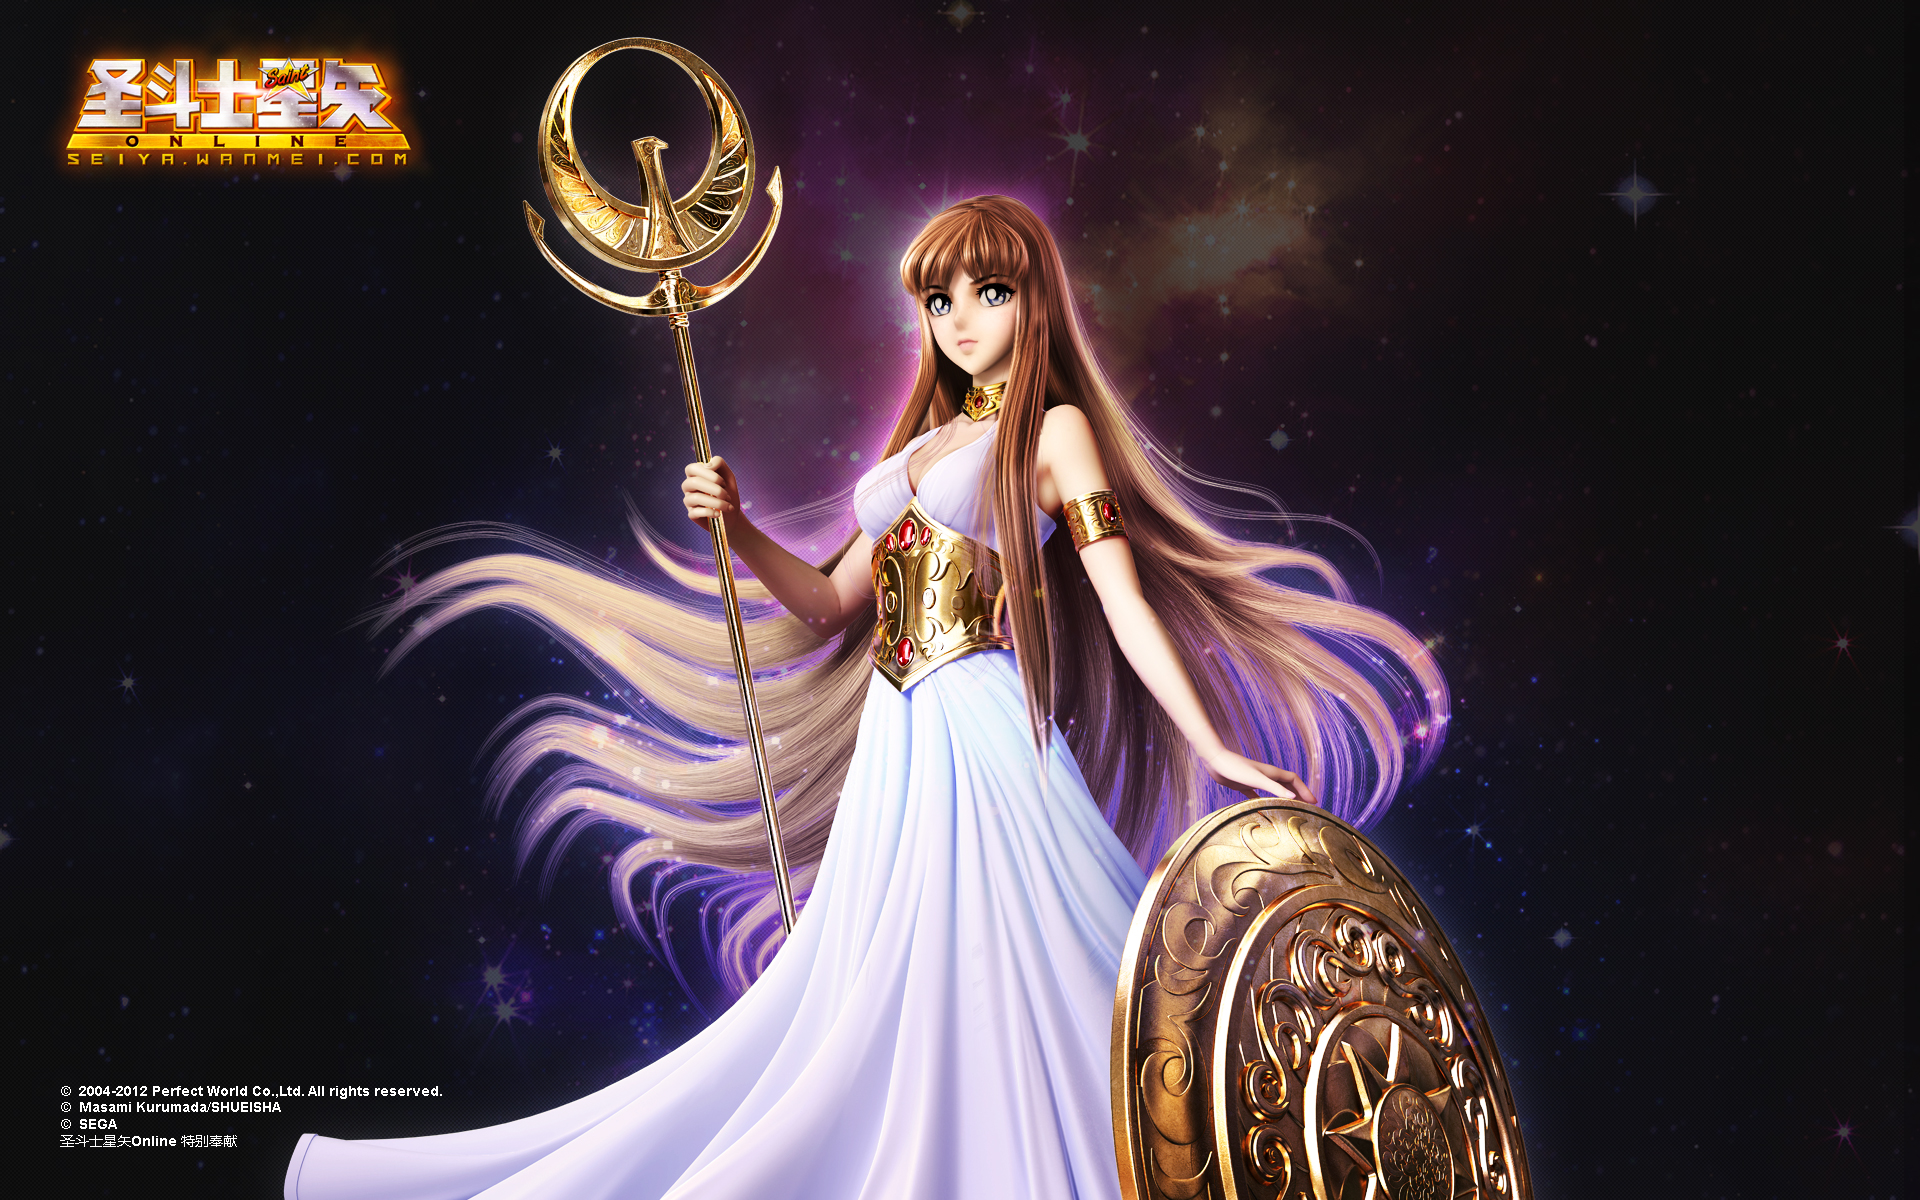 Athena Pegasus Seiya Andromeda Shun Saint Seiya: Saintia Shō Saint Seiya:  Knights of the Zodiac, Anime, cg Artwork, fictional Character png | PNGEgg